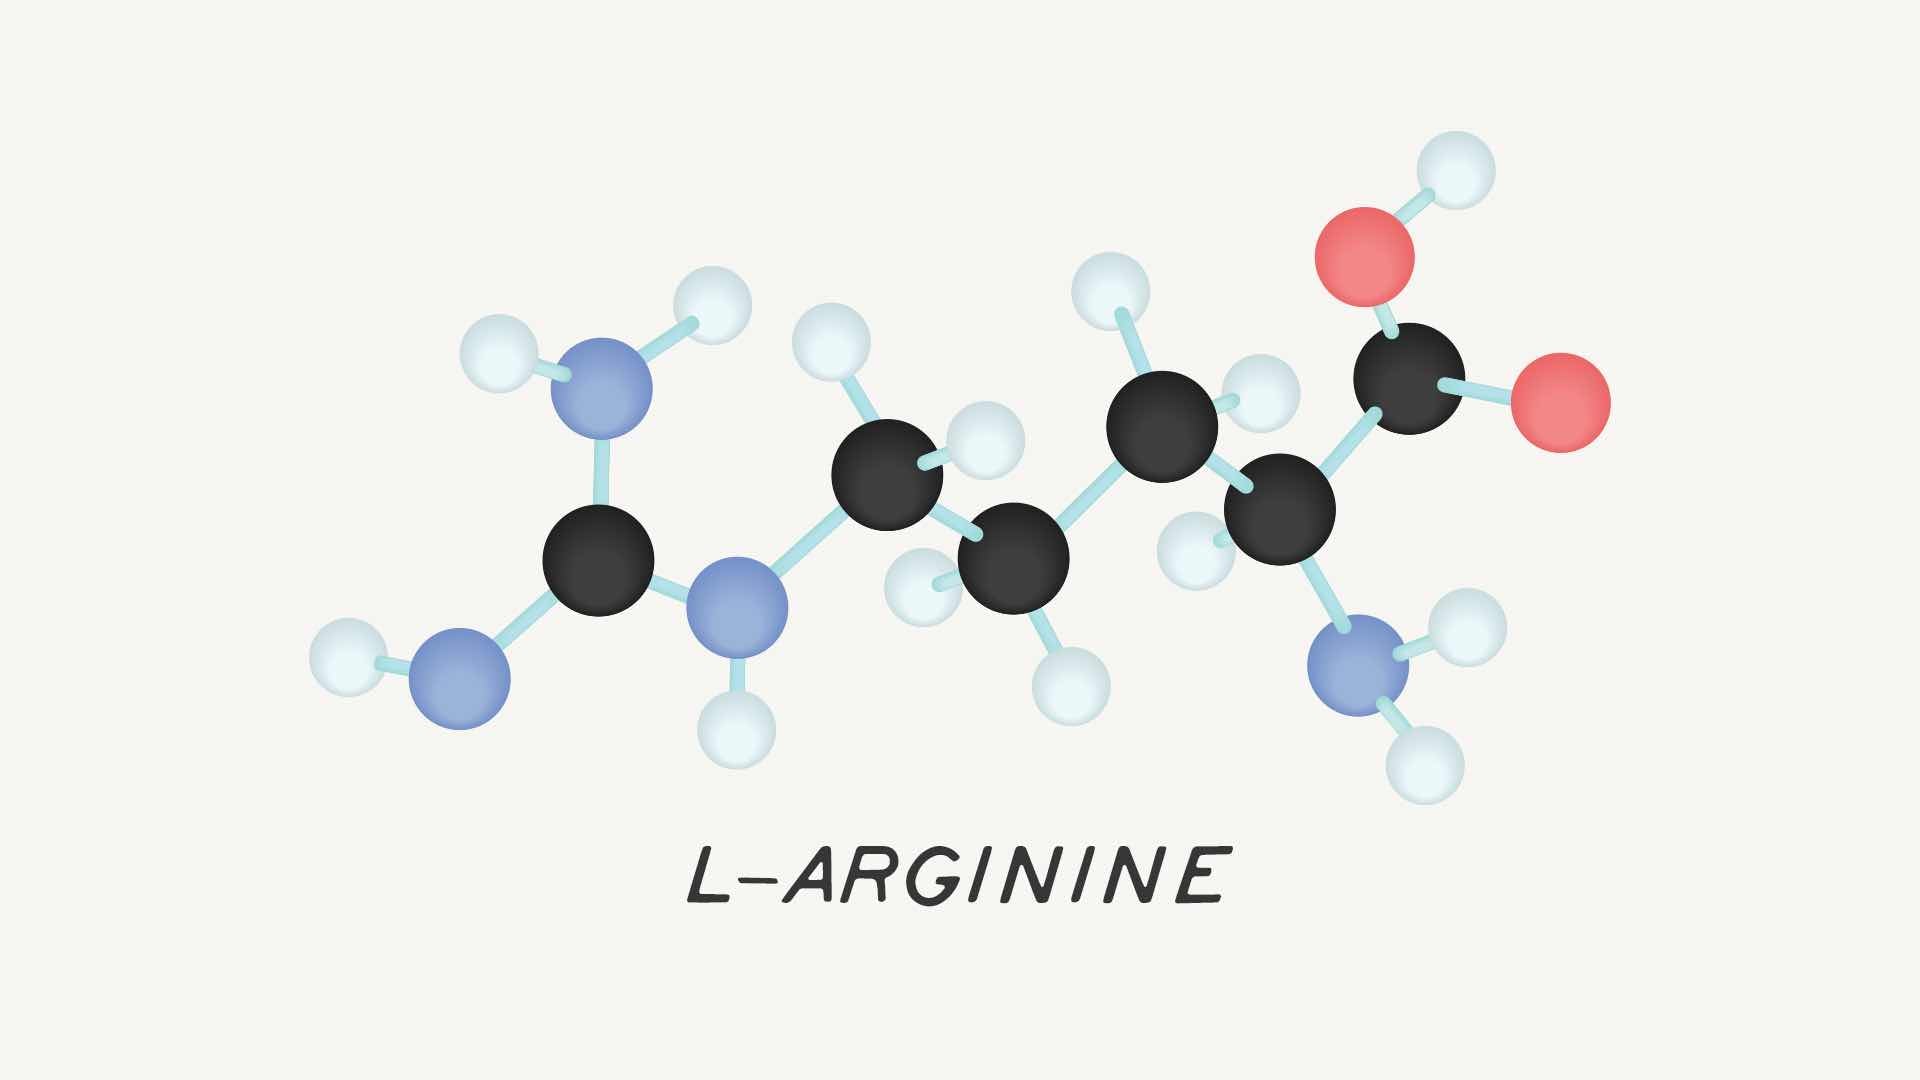 L-Arginine for blood flow